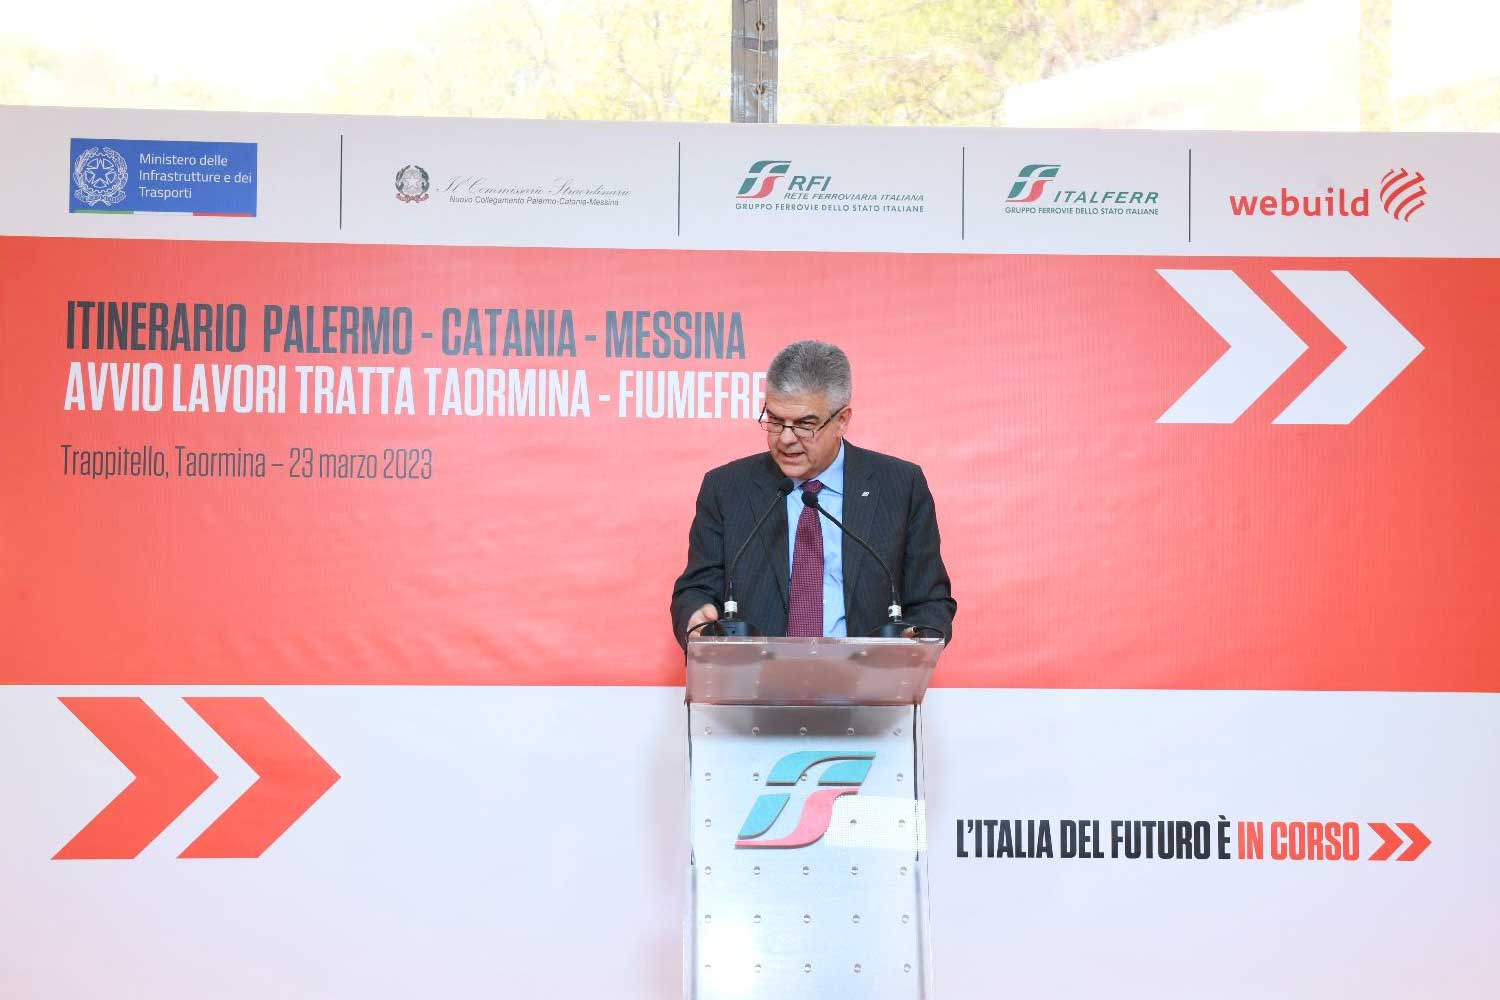 Luigi Ferraris, AD del Gruppo FS, interviene all'evento per l'avvio dei lavori nel cantiere Taormina-Fiumefreddo